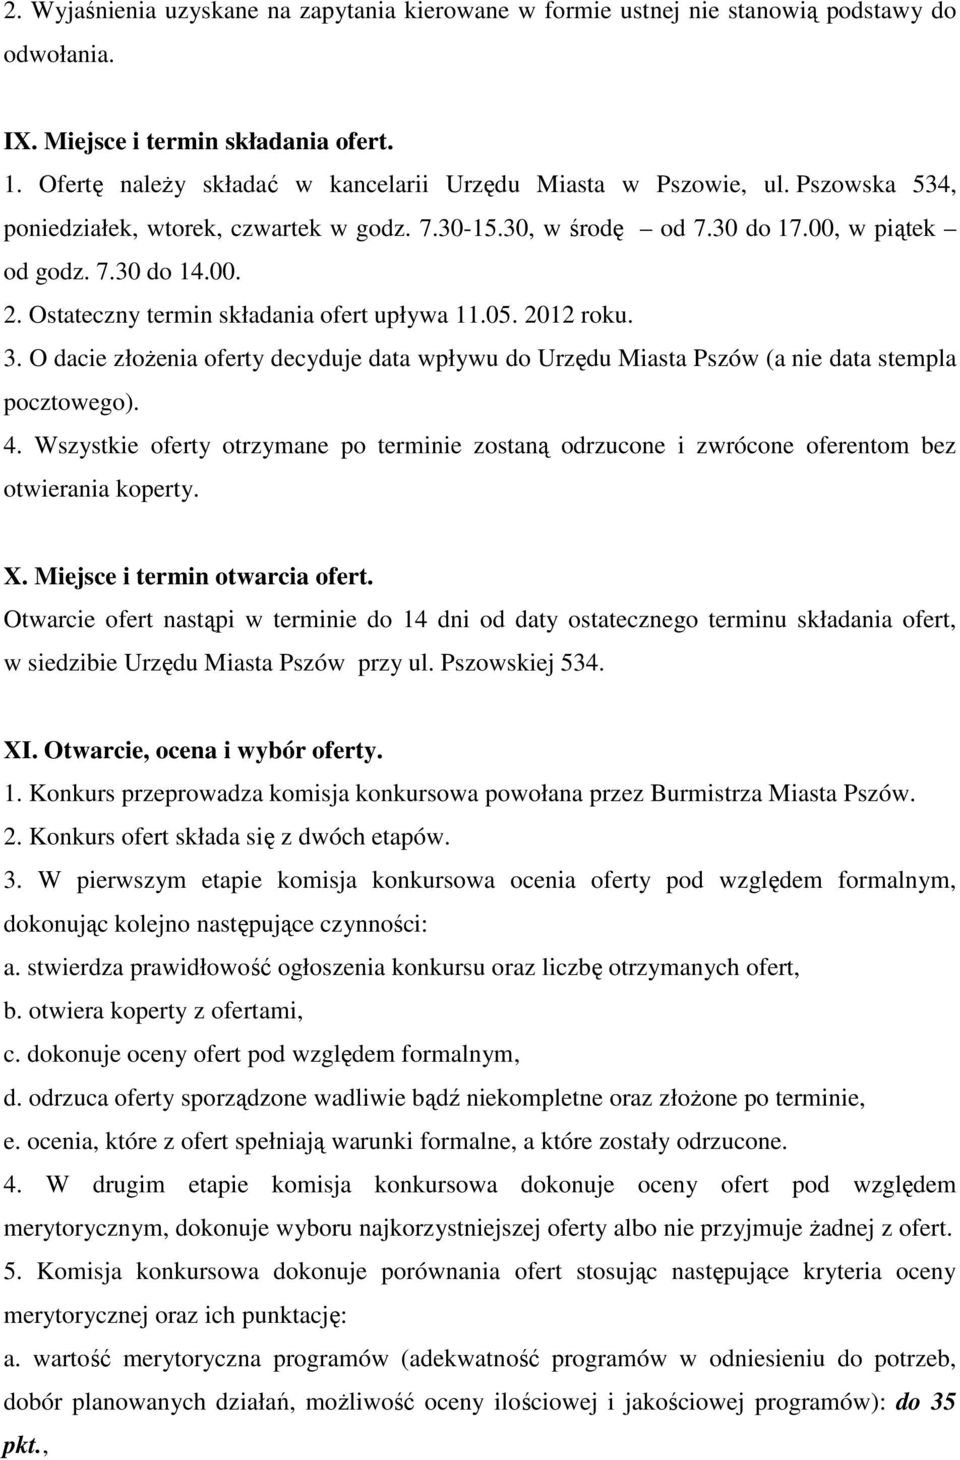 Ostateczny termin składania ofert upływa 11.05. 2012 roku. 3. O dacie złoŝenia oferty decyduje data wpływu do Urzędu Miasta Pszów (a nie data stempla pocztowego). 4.